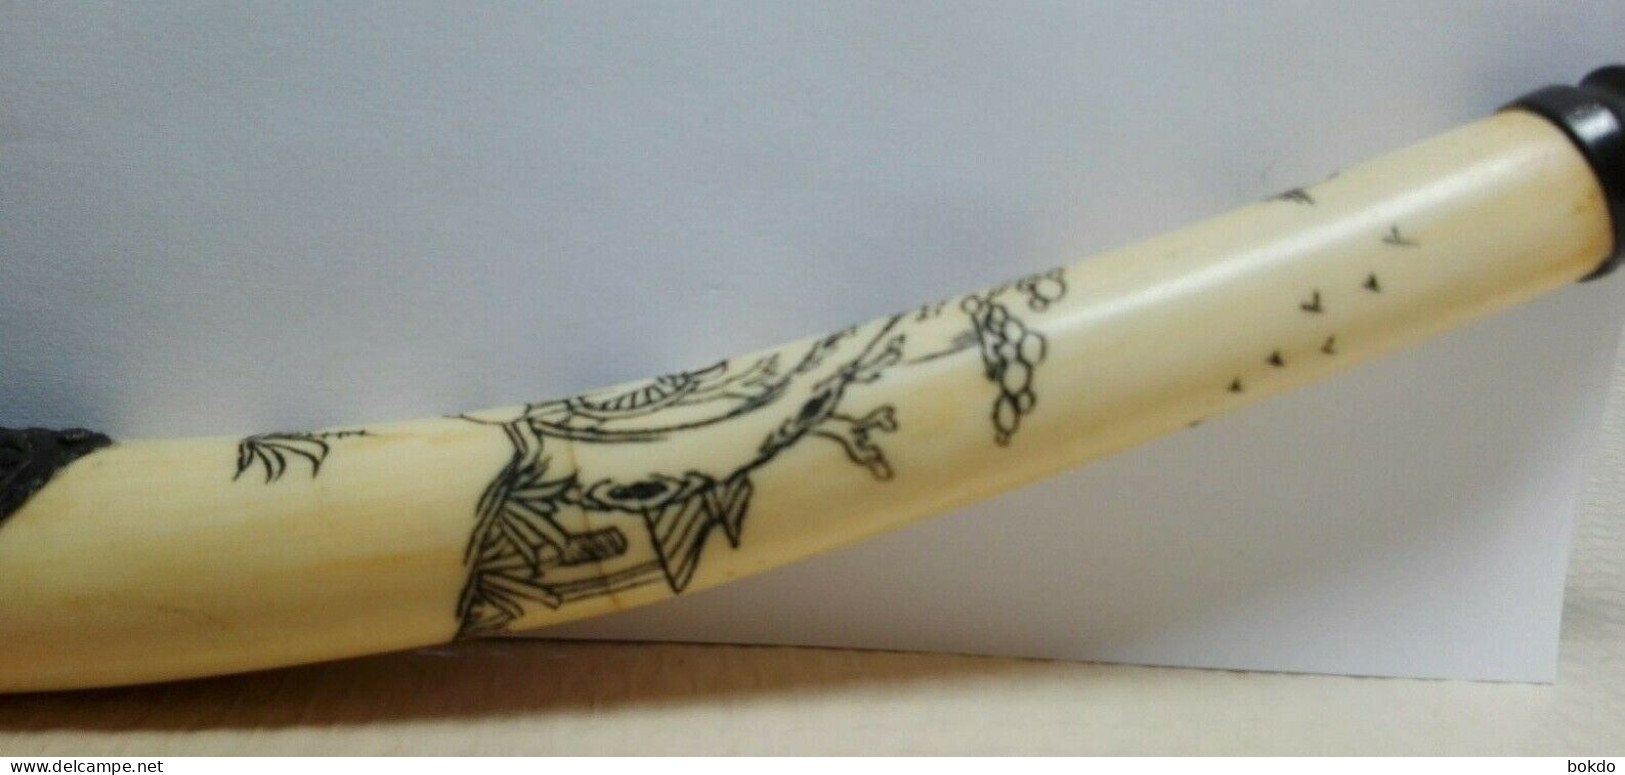 Très jolie ancienne pipe - asiatique - joliment travaillé - 32 cm